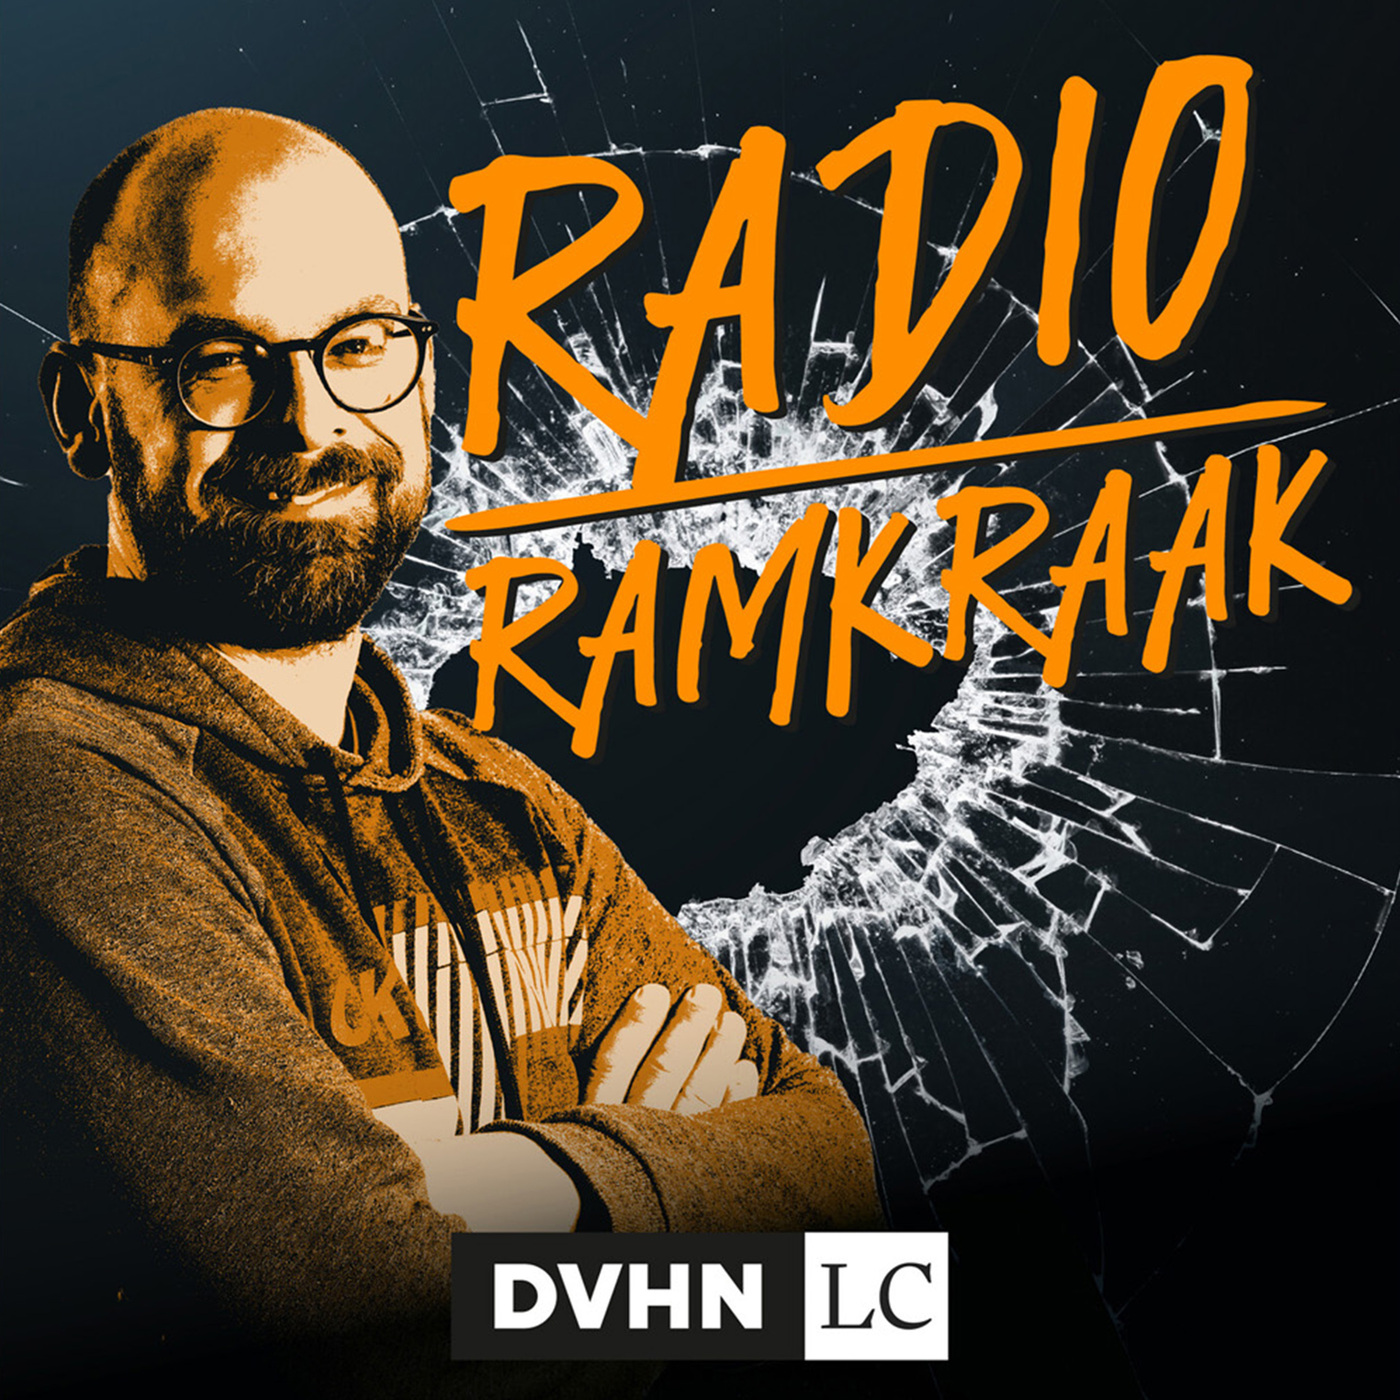 Radio Ramkraak: ‘Dit wordt niet opgelost door iemand te veroordelen die onschuldig is’